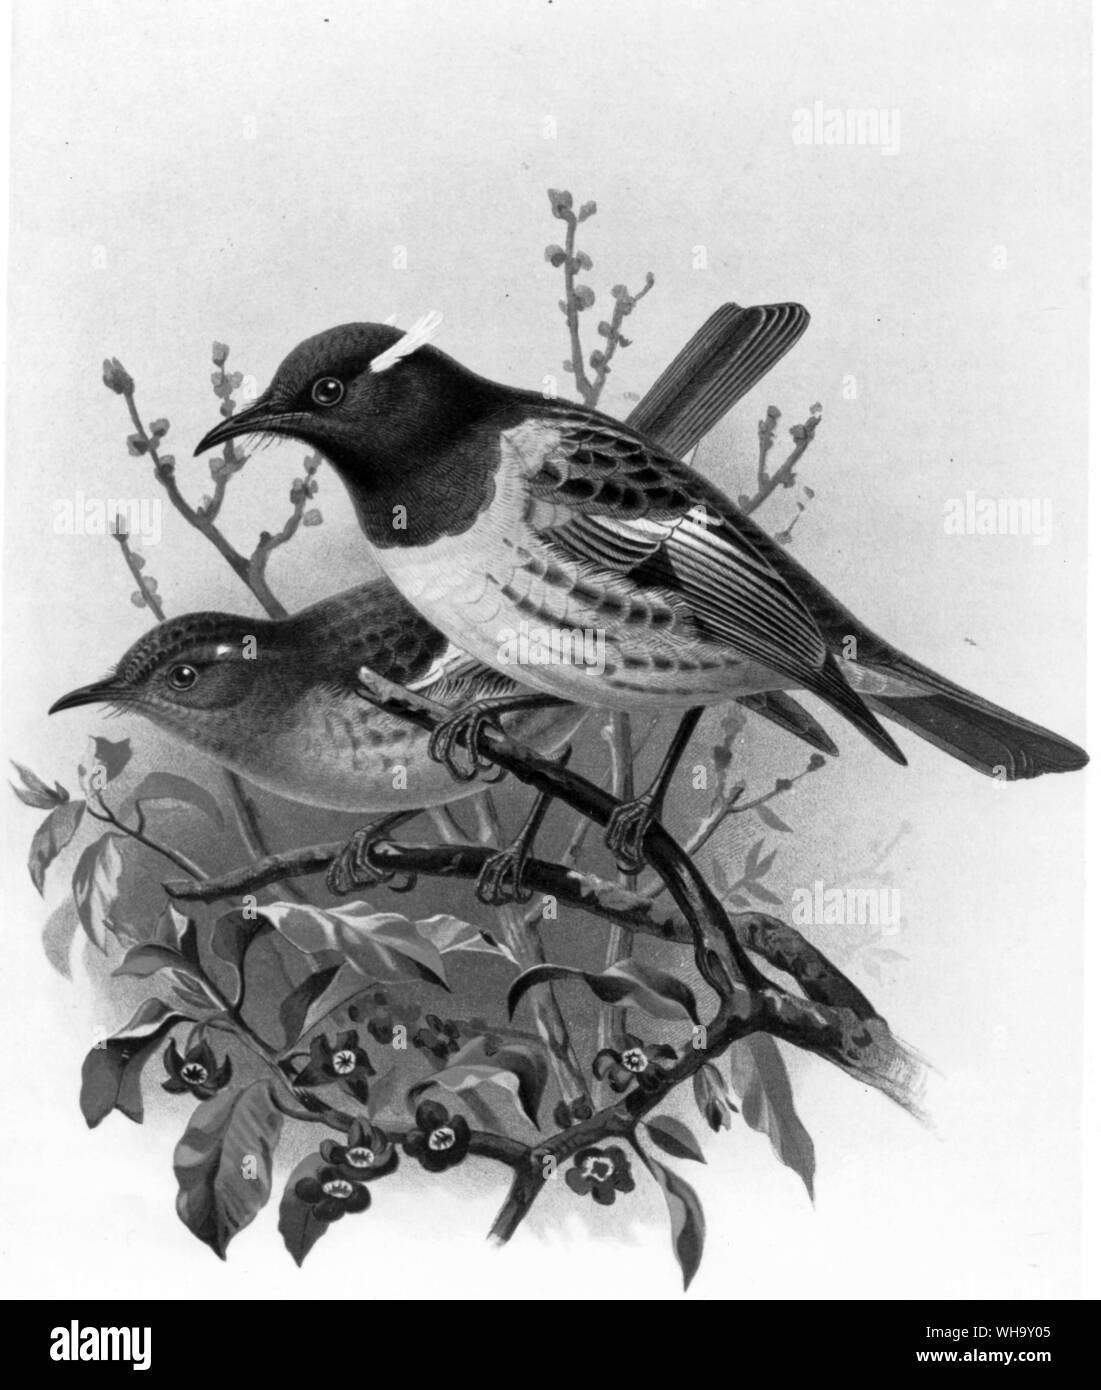 (Stitchbirds Notiomystis gracilis), Male (vorne) und weiblich (dahinter). Diese Arten ausgestorben auf dem neuseeländischen Festland geworden, aber eine kleine Bevölkerung immer noch überlebt auf der Insel Little Barrier. Chromolithograph nach einem Gemälde von J.G. Keulemans von W.I. Buller "Geschichte der Vögel von Neuseeland, Vol.1 (London, 1887-8), Pl.11. Stockfoto